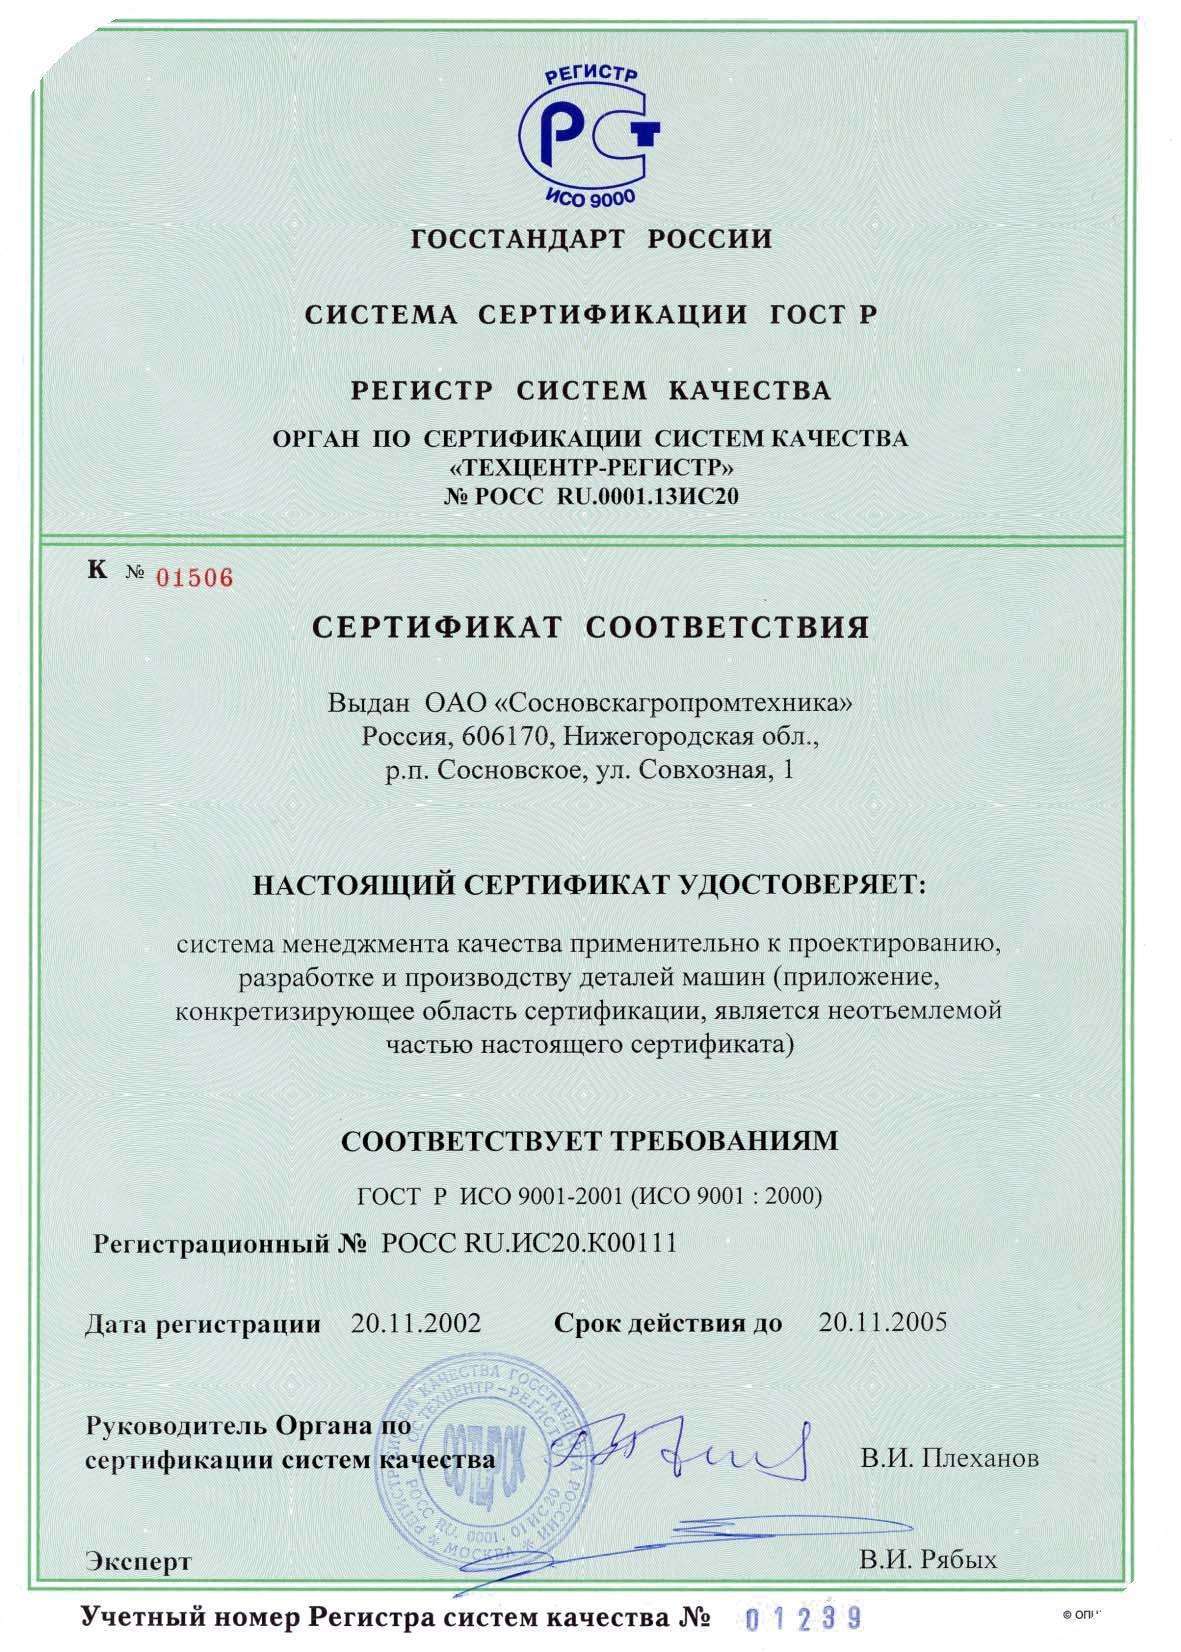 2002 год - Проведена сертификация СМК на соответствие требованиям стандарта ГОСТ Р ИСО 9001 версии 2001г в АО Сосновскагропромтехника